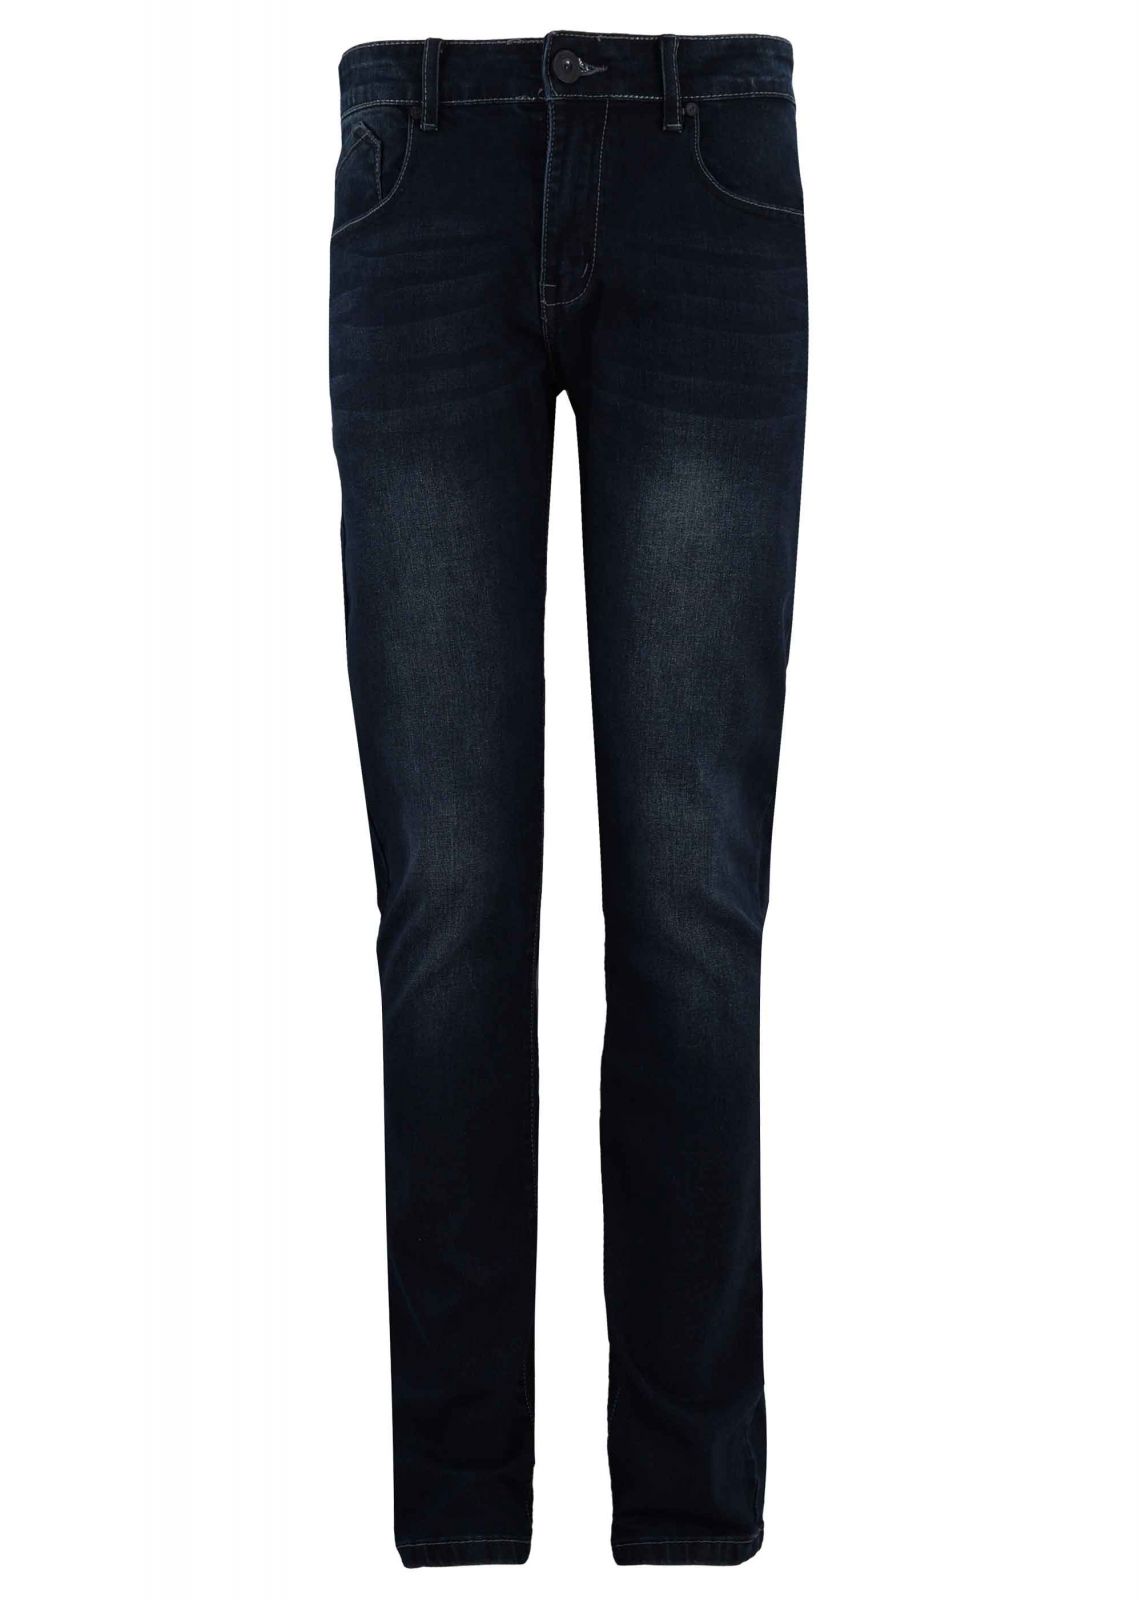 Ανδρικό παντελόνι χρώμα jean με ελαστικότητα. Denim collection.